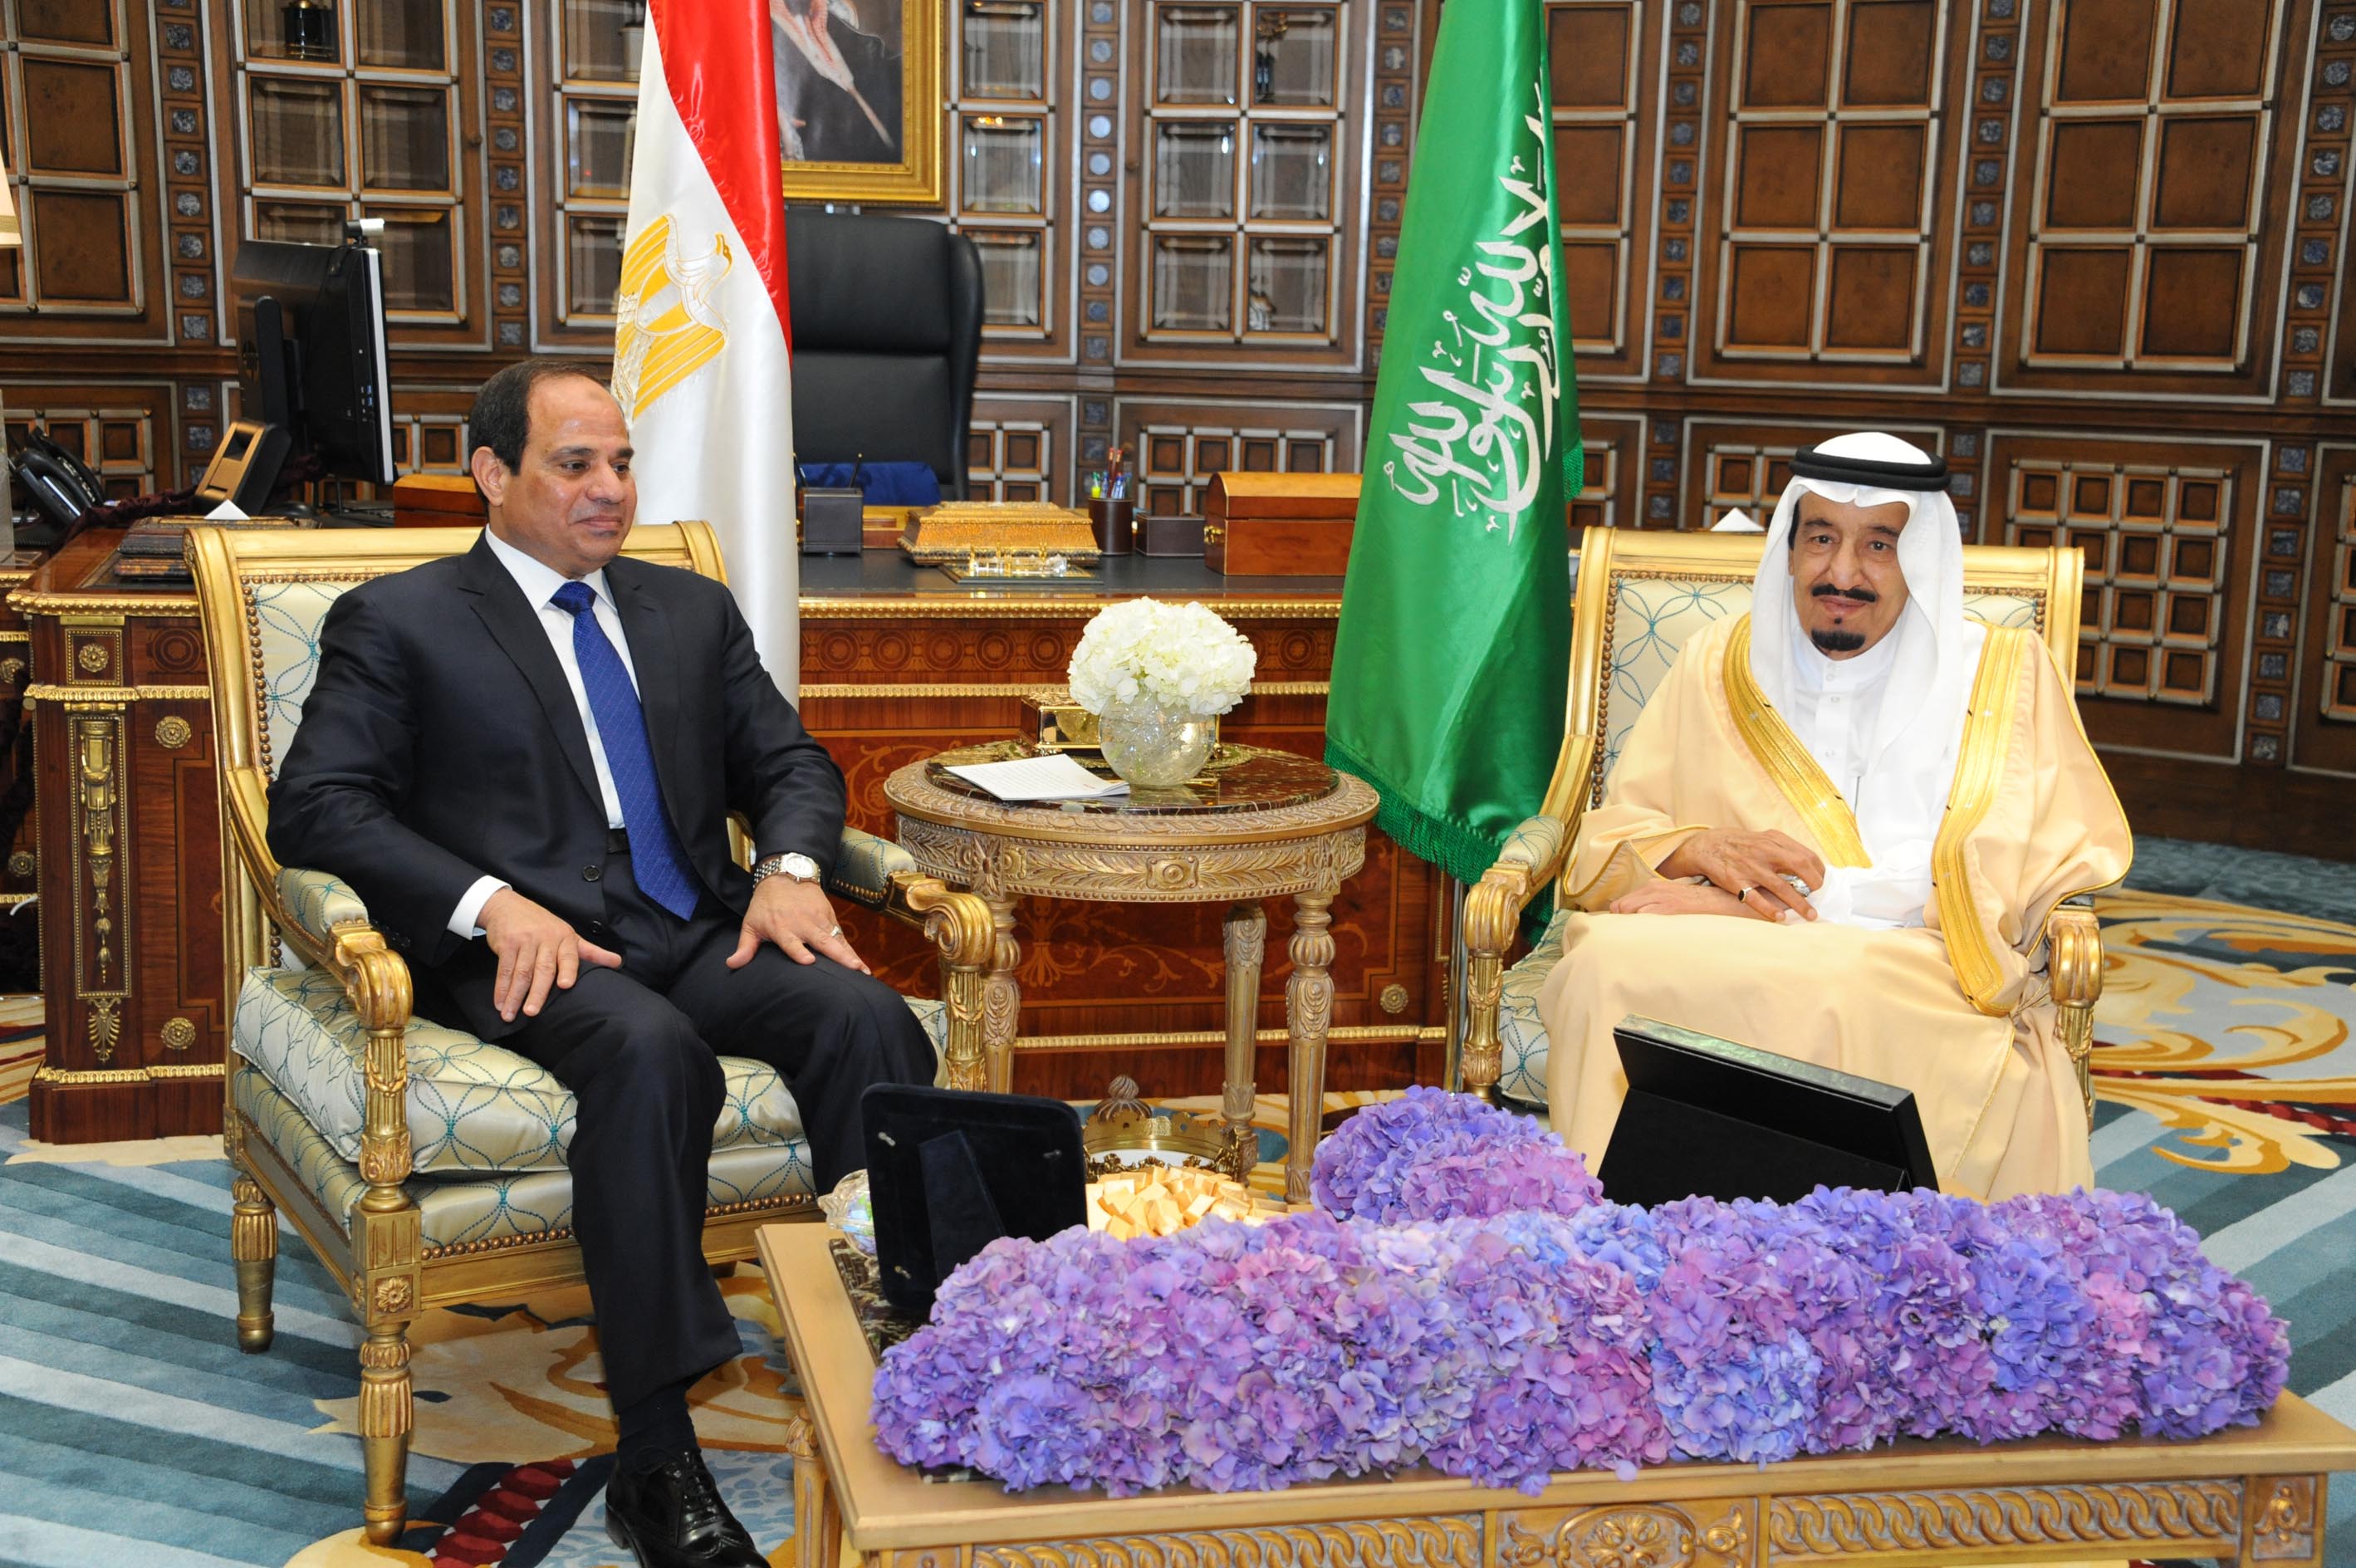 السعودية ستمول احتياجات مصر النفطية لـ 5 سنوات بـ20 مليار$